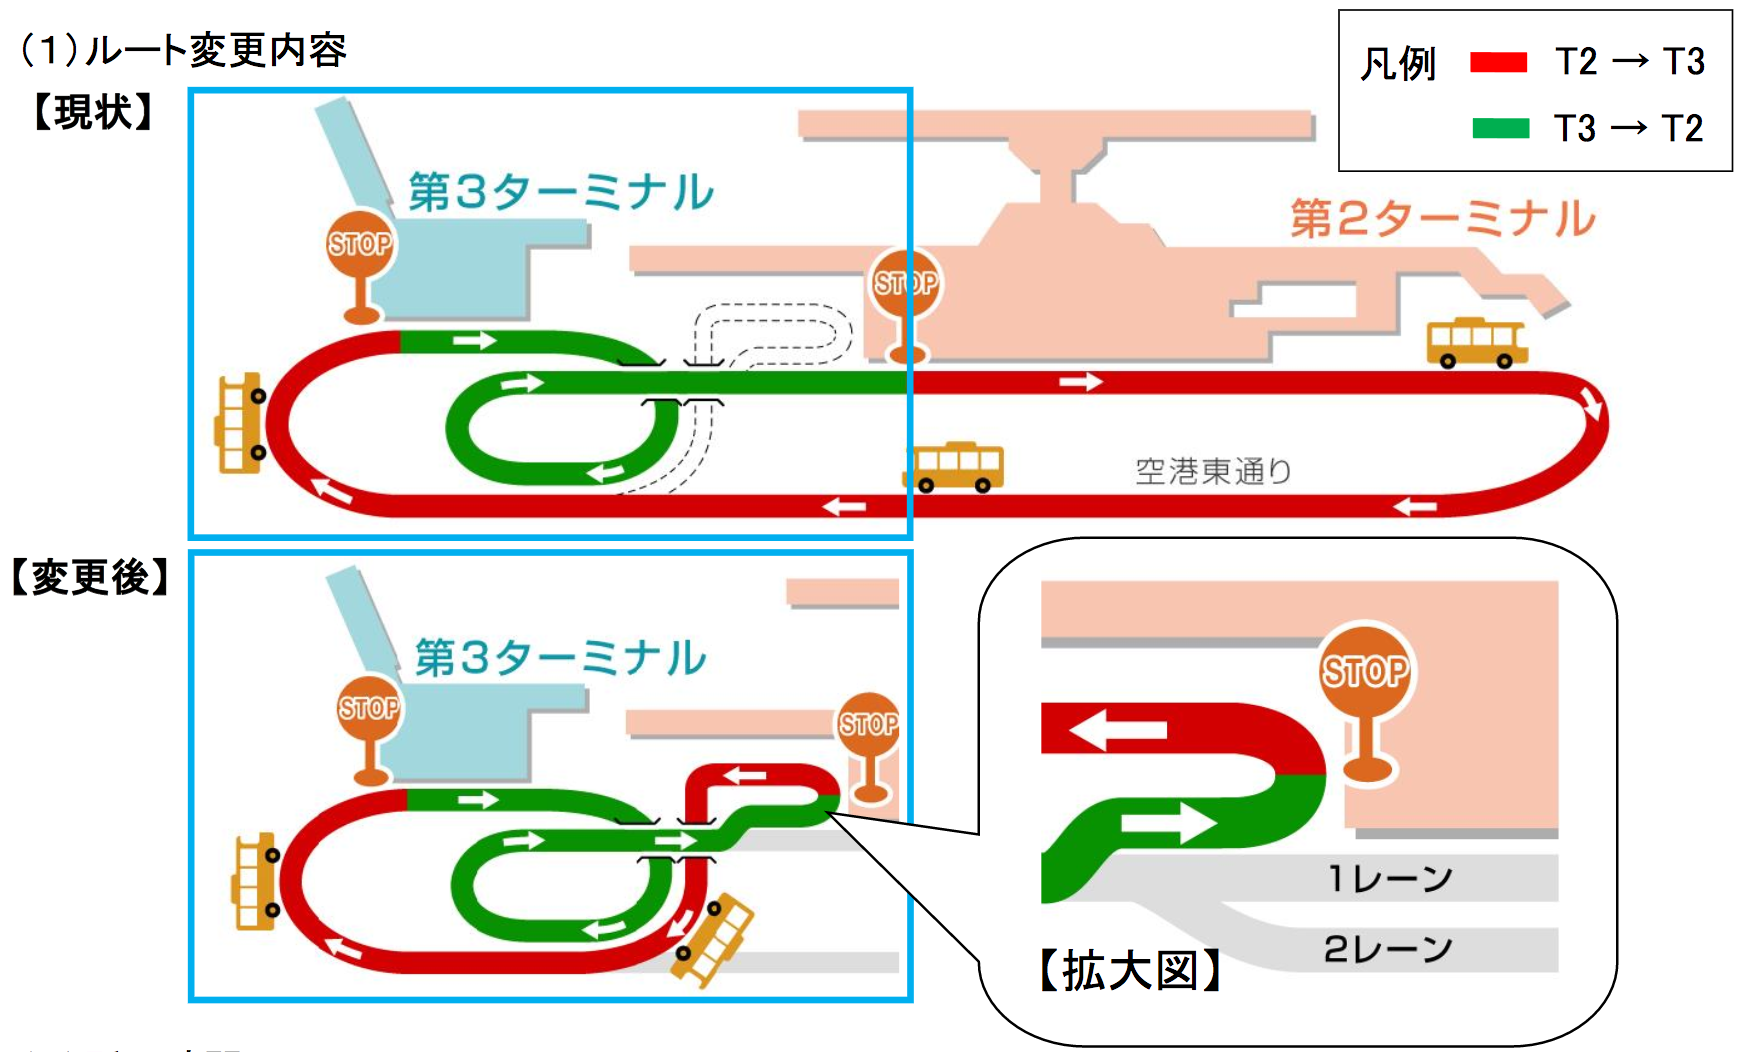 成田国際空港 第2ターミナル 第3ターミナルへの連絡バスルートを短縮 旅するlcc